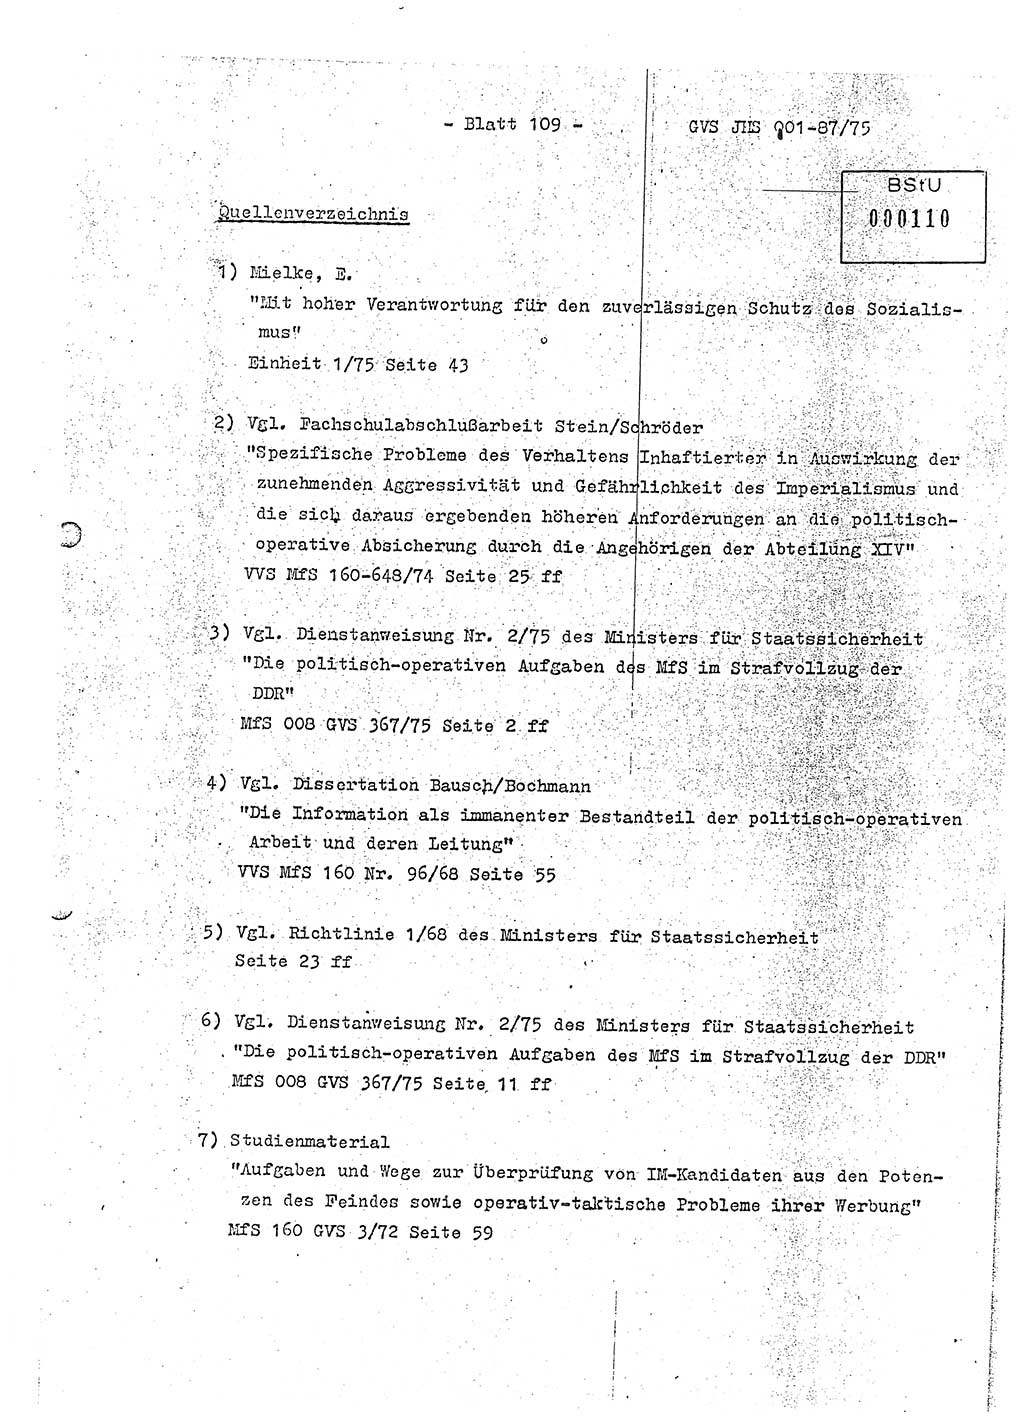 Diplomarbeit Hauptmann Volkmar Heinz (Abt. ⅩⅣ), Oberleutnant Lothar Rüdiger (BV Lpz. Abt. Ⅺ), Ministerium für Staatssicherheit (MfS) [Deutsche Demokratische Republik (DDR)], Juristische Hochschule (JHS), Geheime Verschlußsache (GVS) o001-87/75, Potsdam 1975, Seite 109 (Dipl.-Arb. MfS DDR JHS GVS o001-87/75 1975, S. 109)